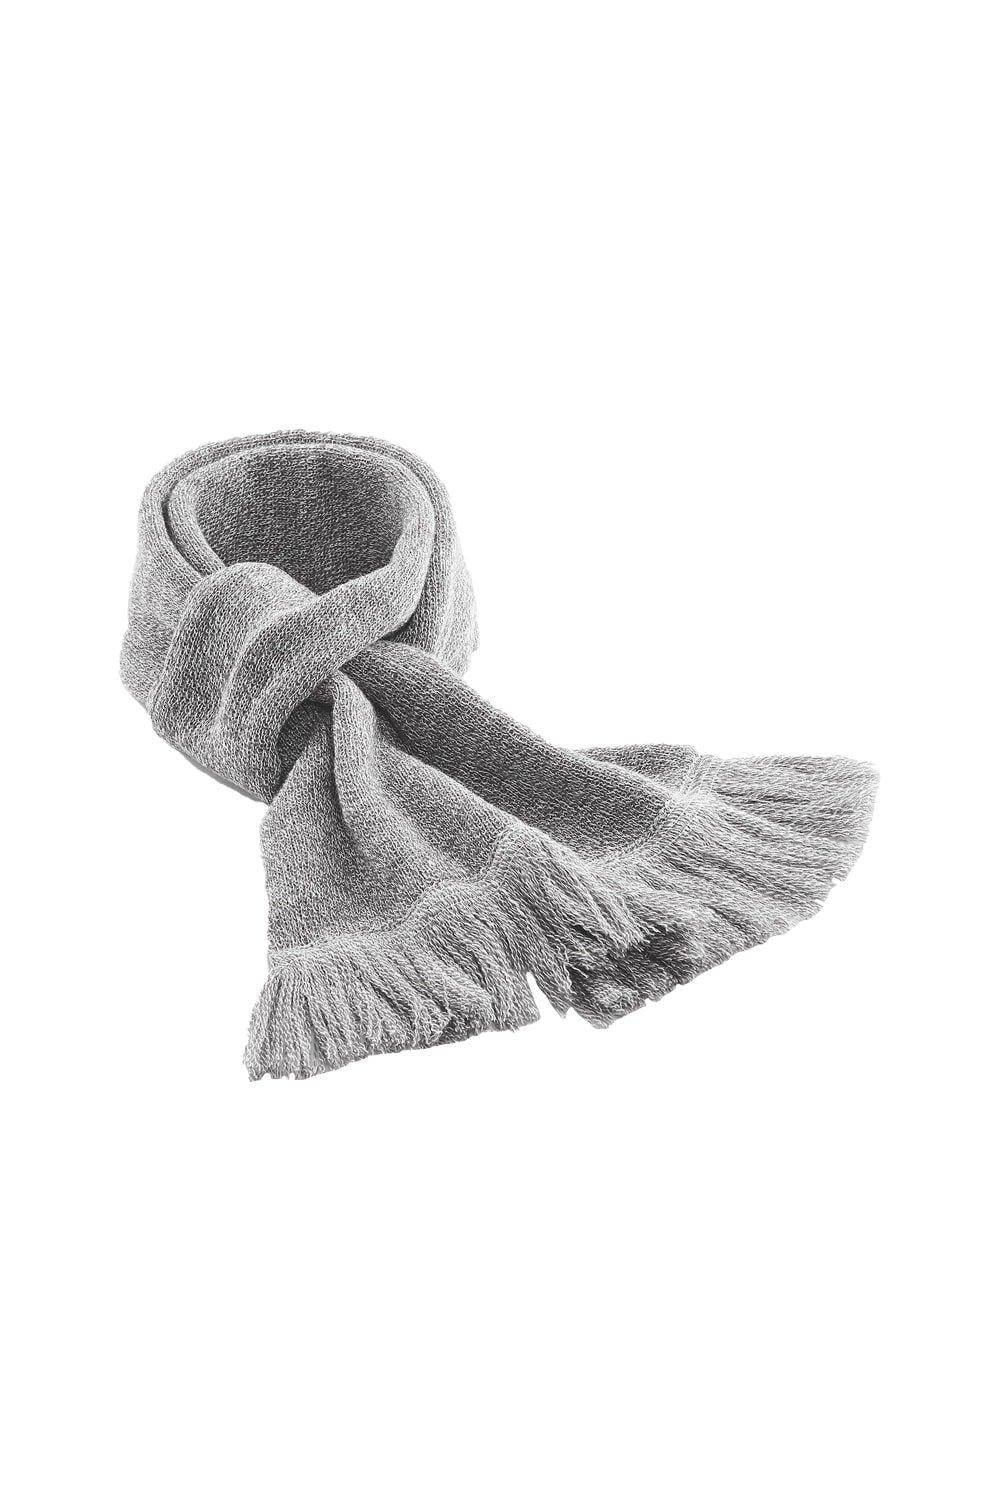 Классический вязаный зимний шарф Beechfield, серый